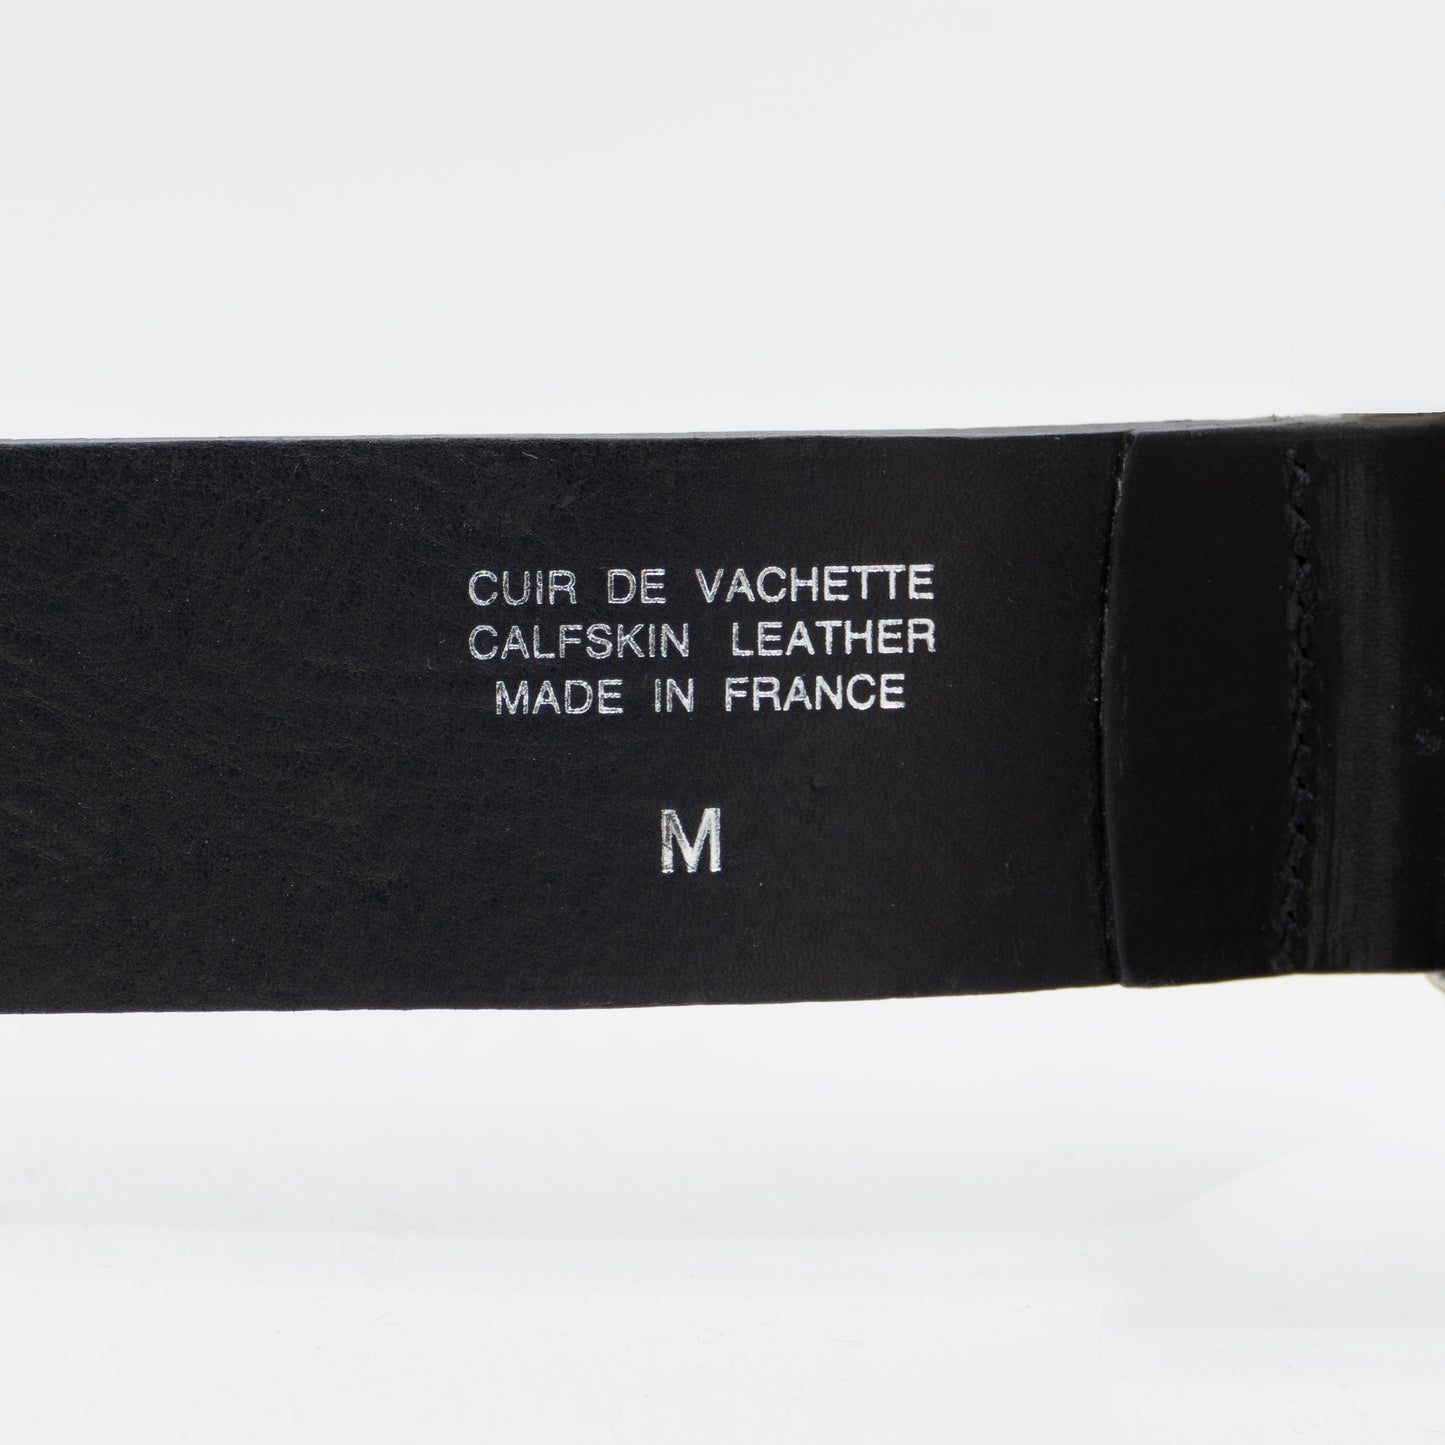 Details stamped on belt